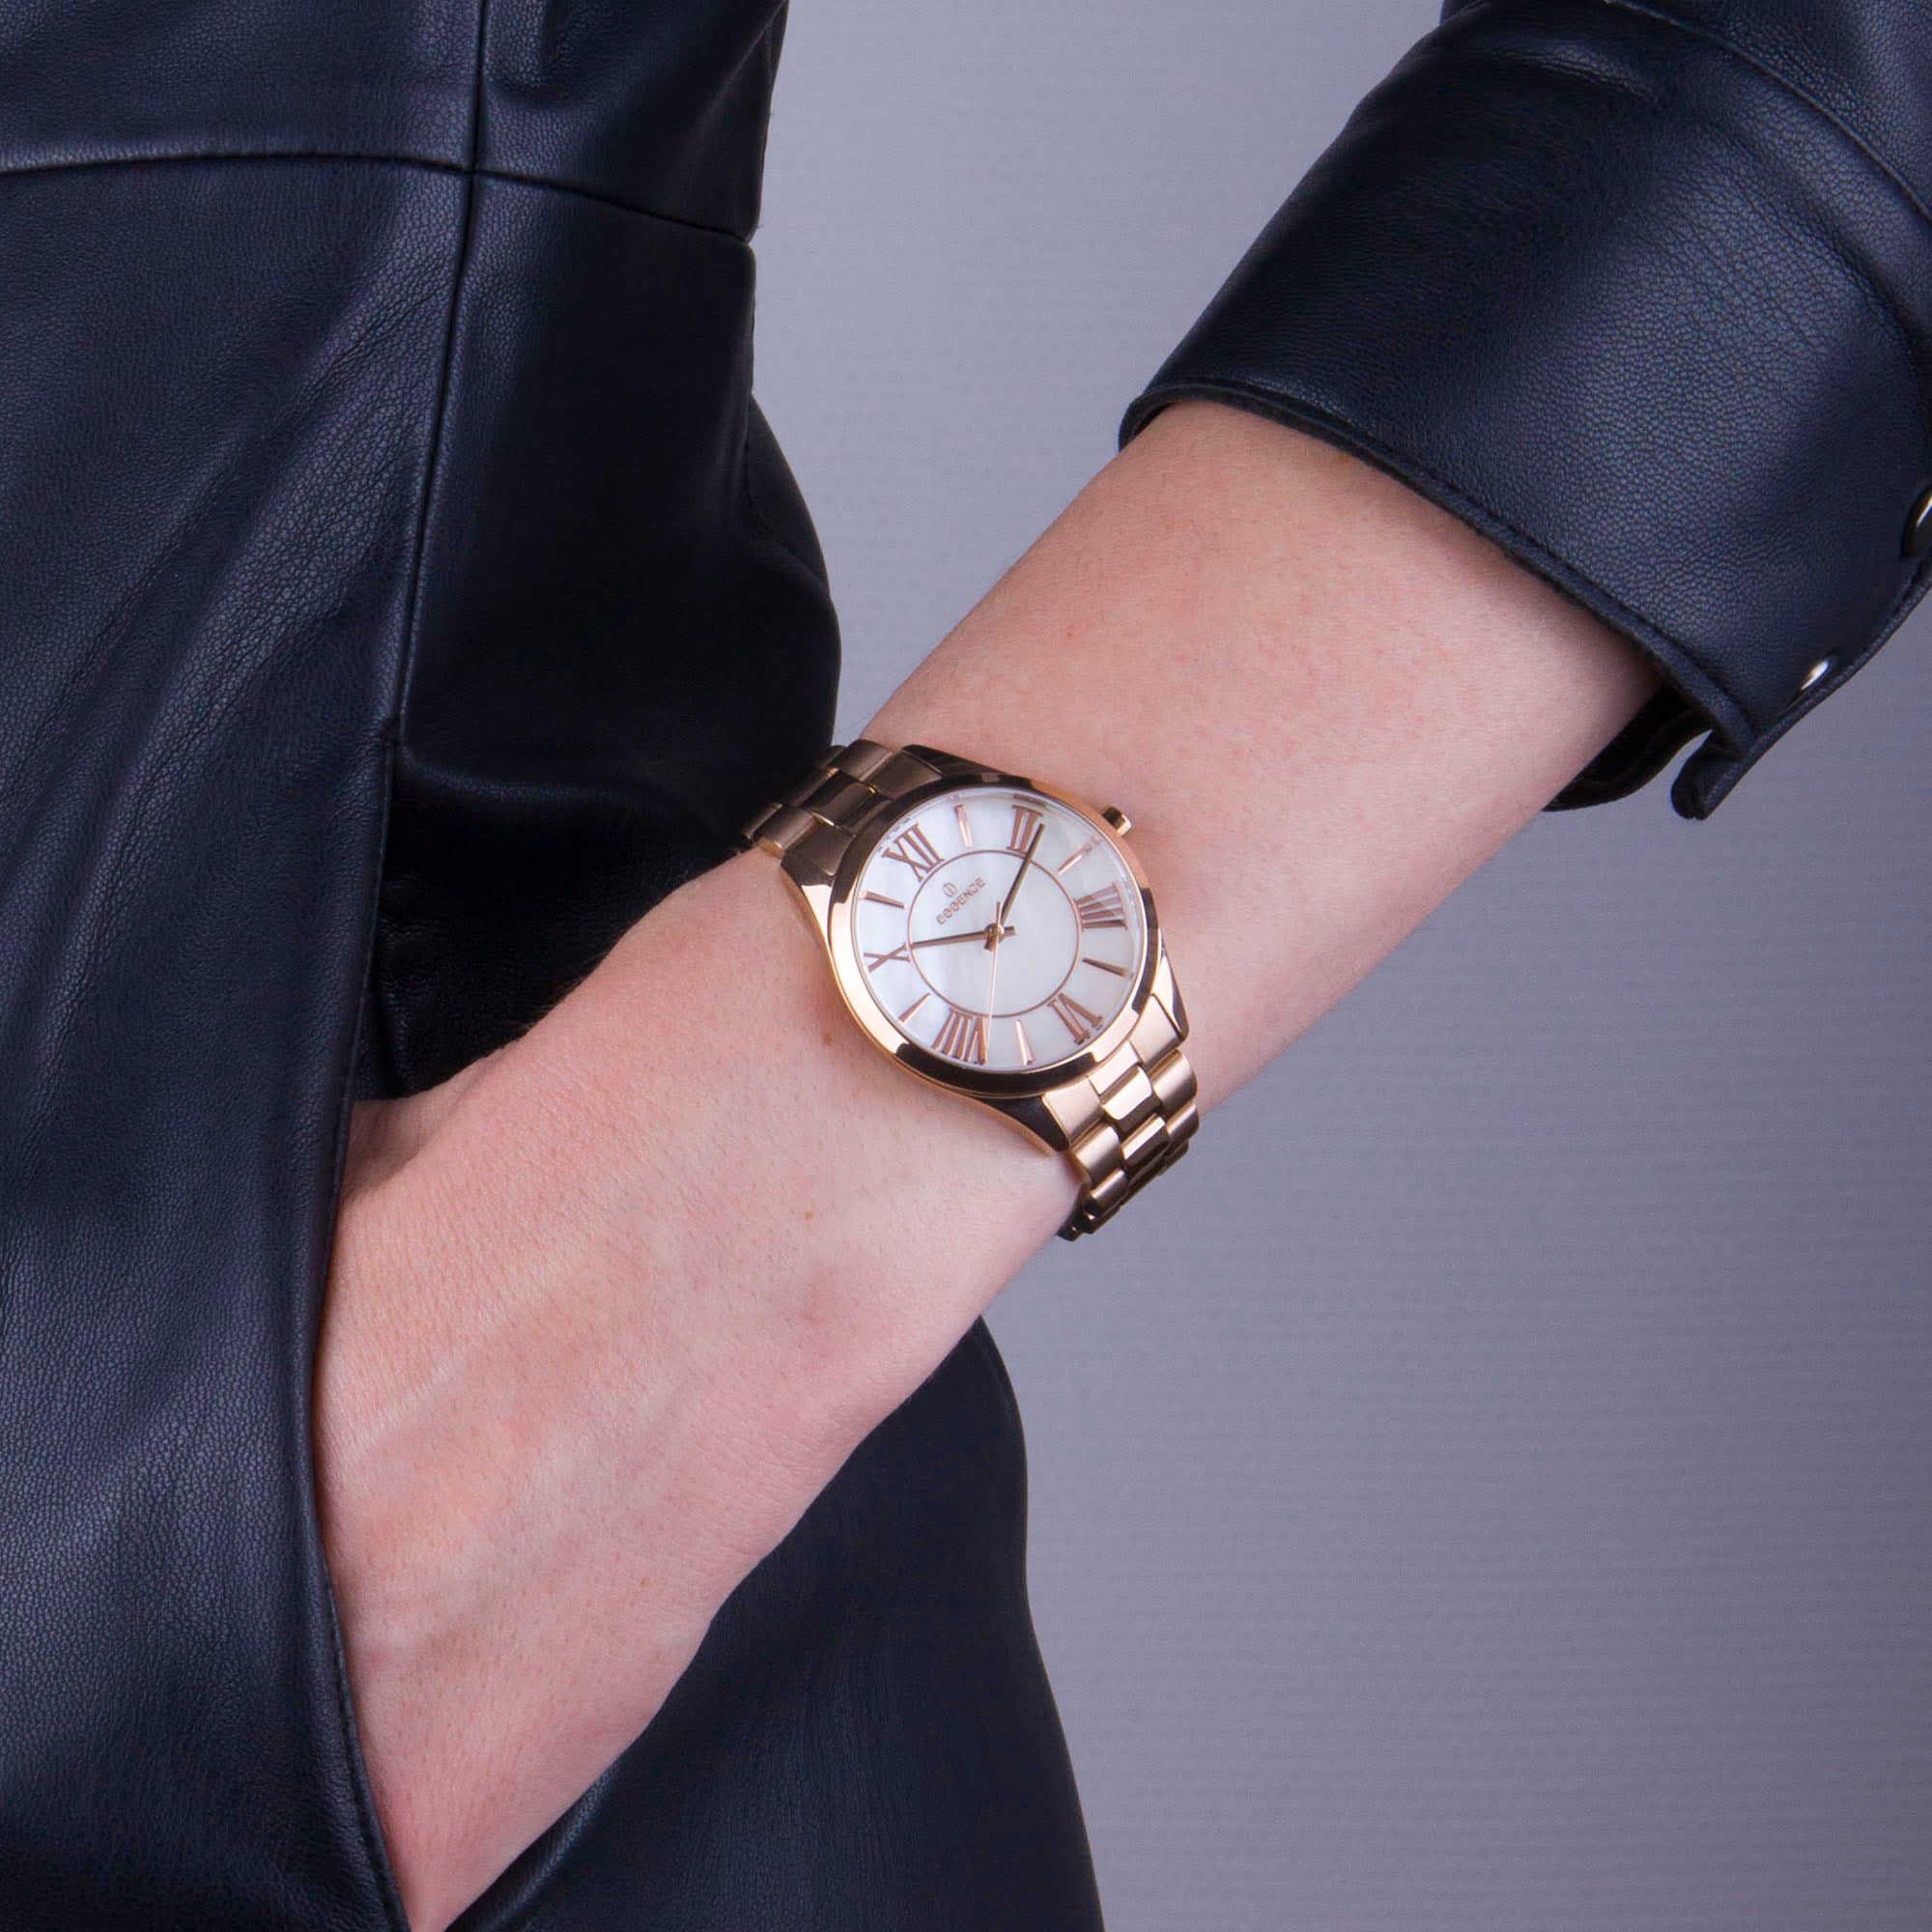 Премиум женские часы Essence – стиль, качество, элегантность